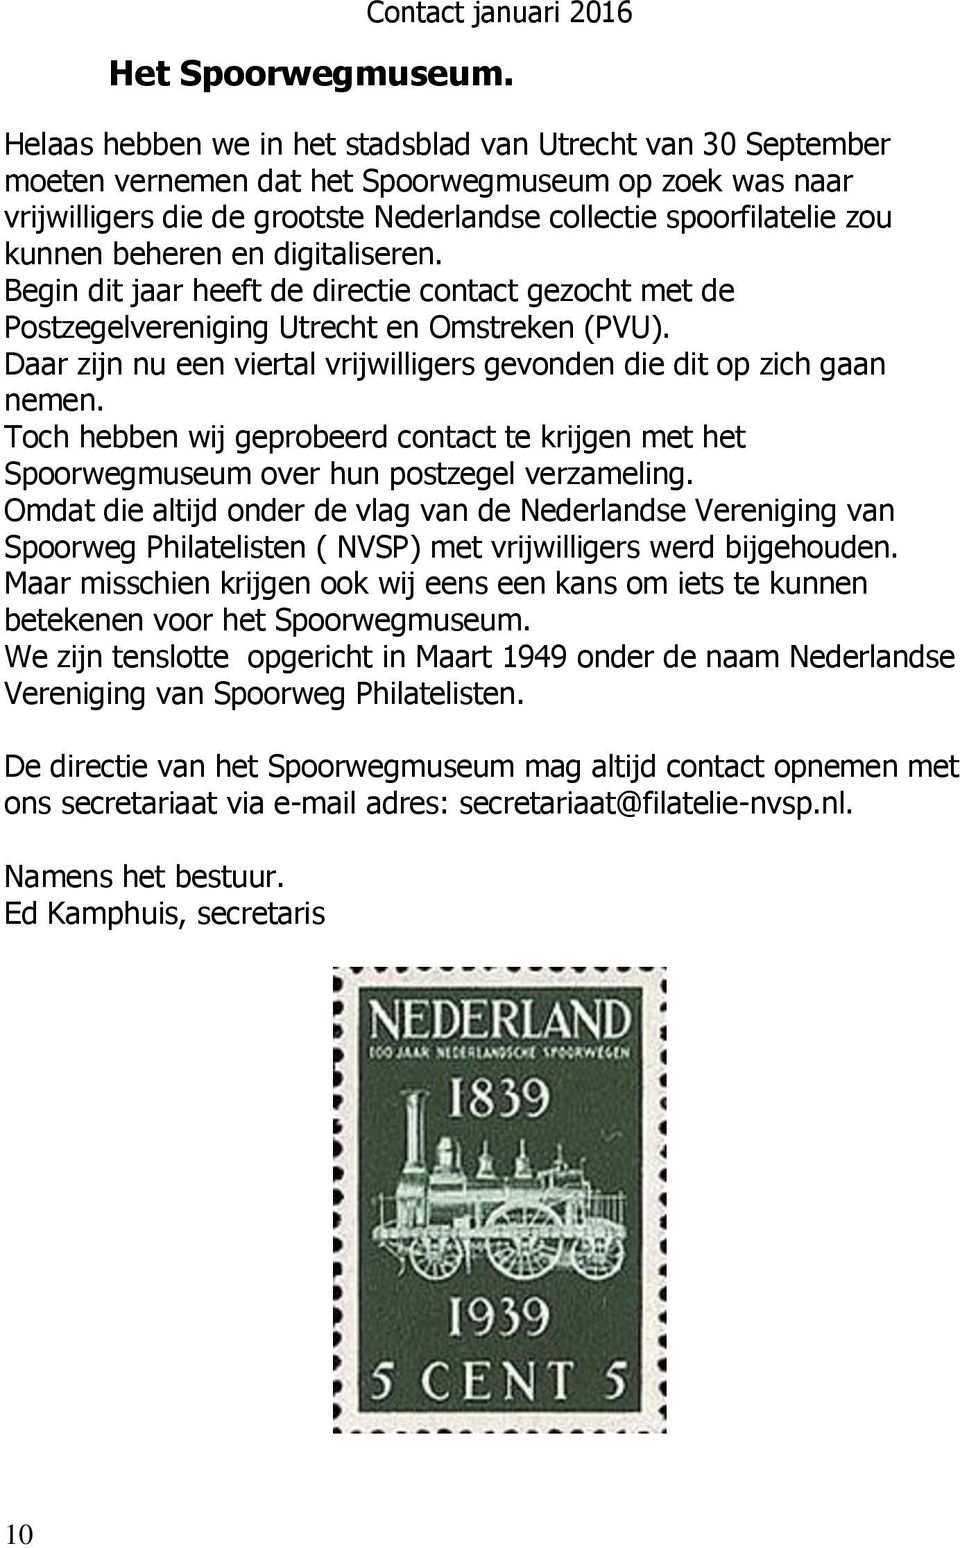 beheren en digitaliseren. Begin dit jaar heeft de directie contact gezocht met de Postzegelvereniging Utrecht en Omstreken (PVU).